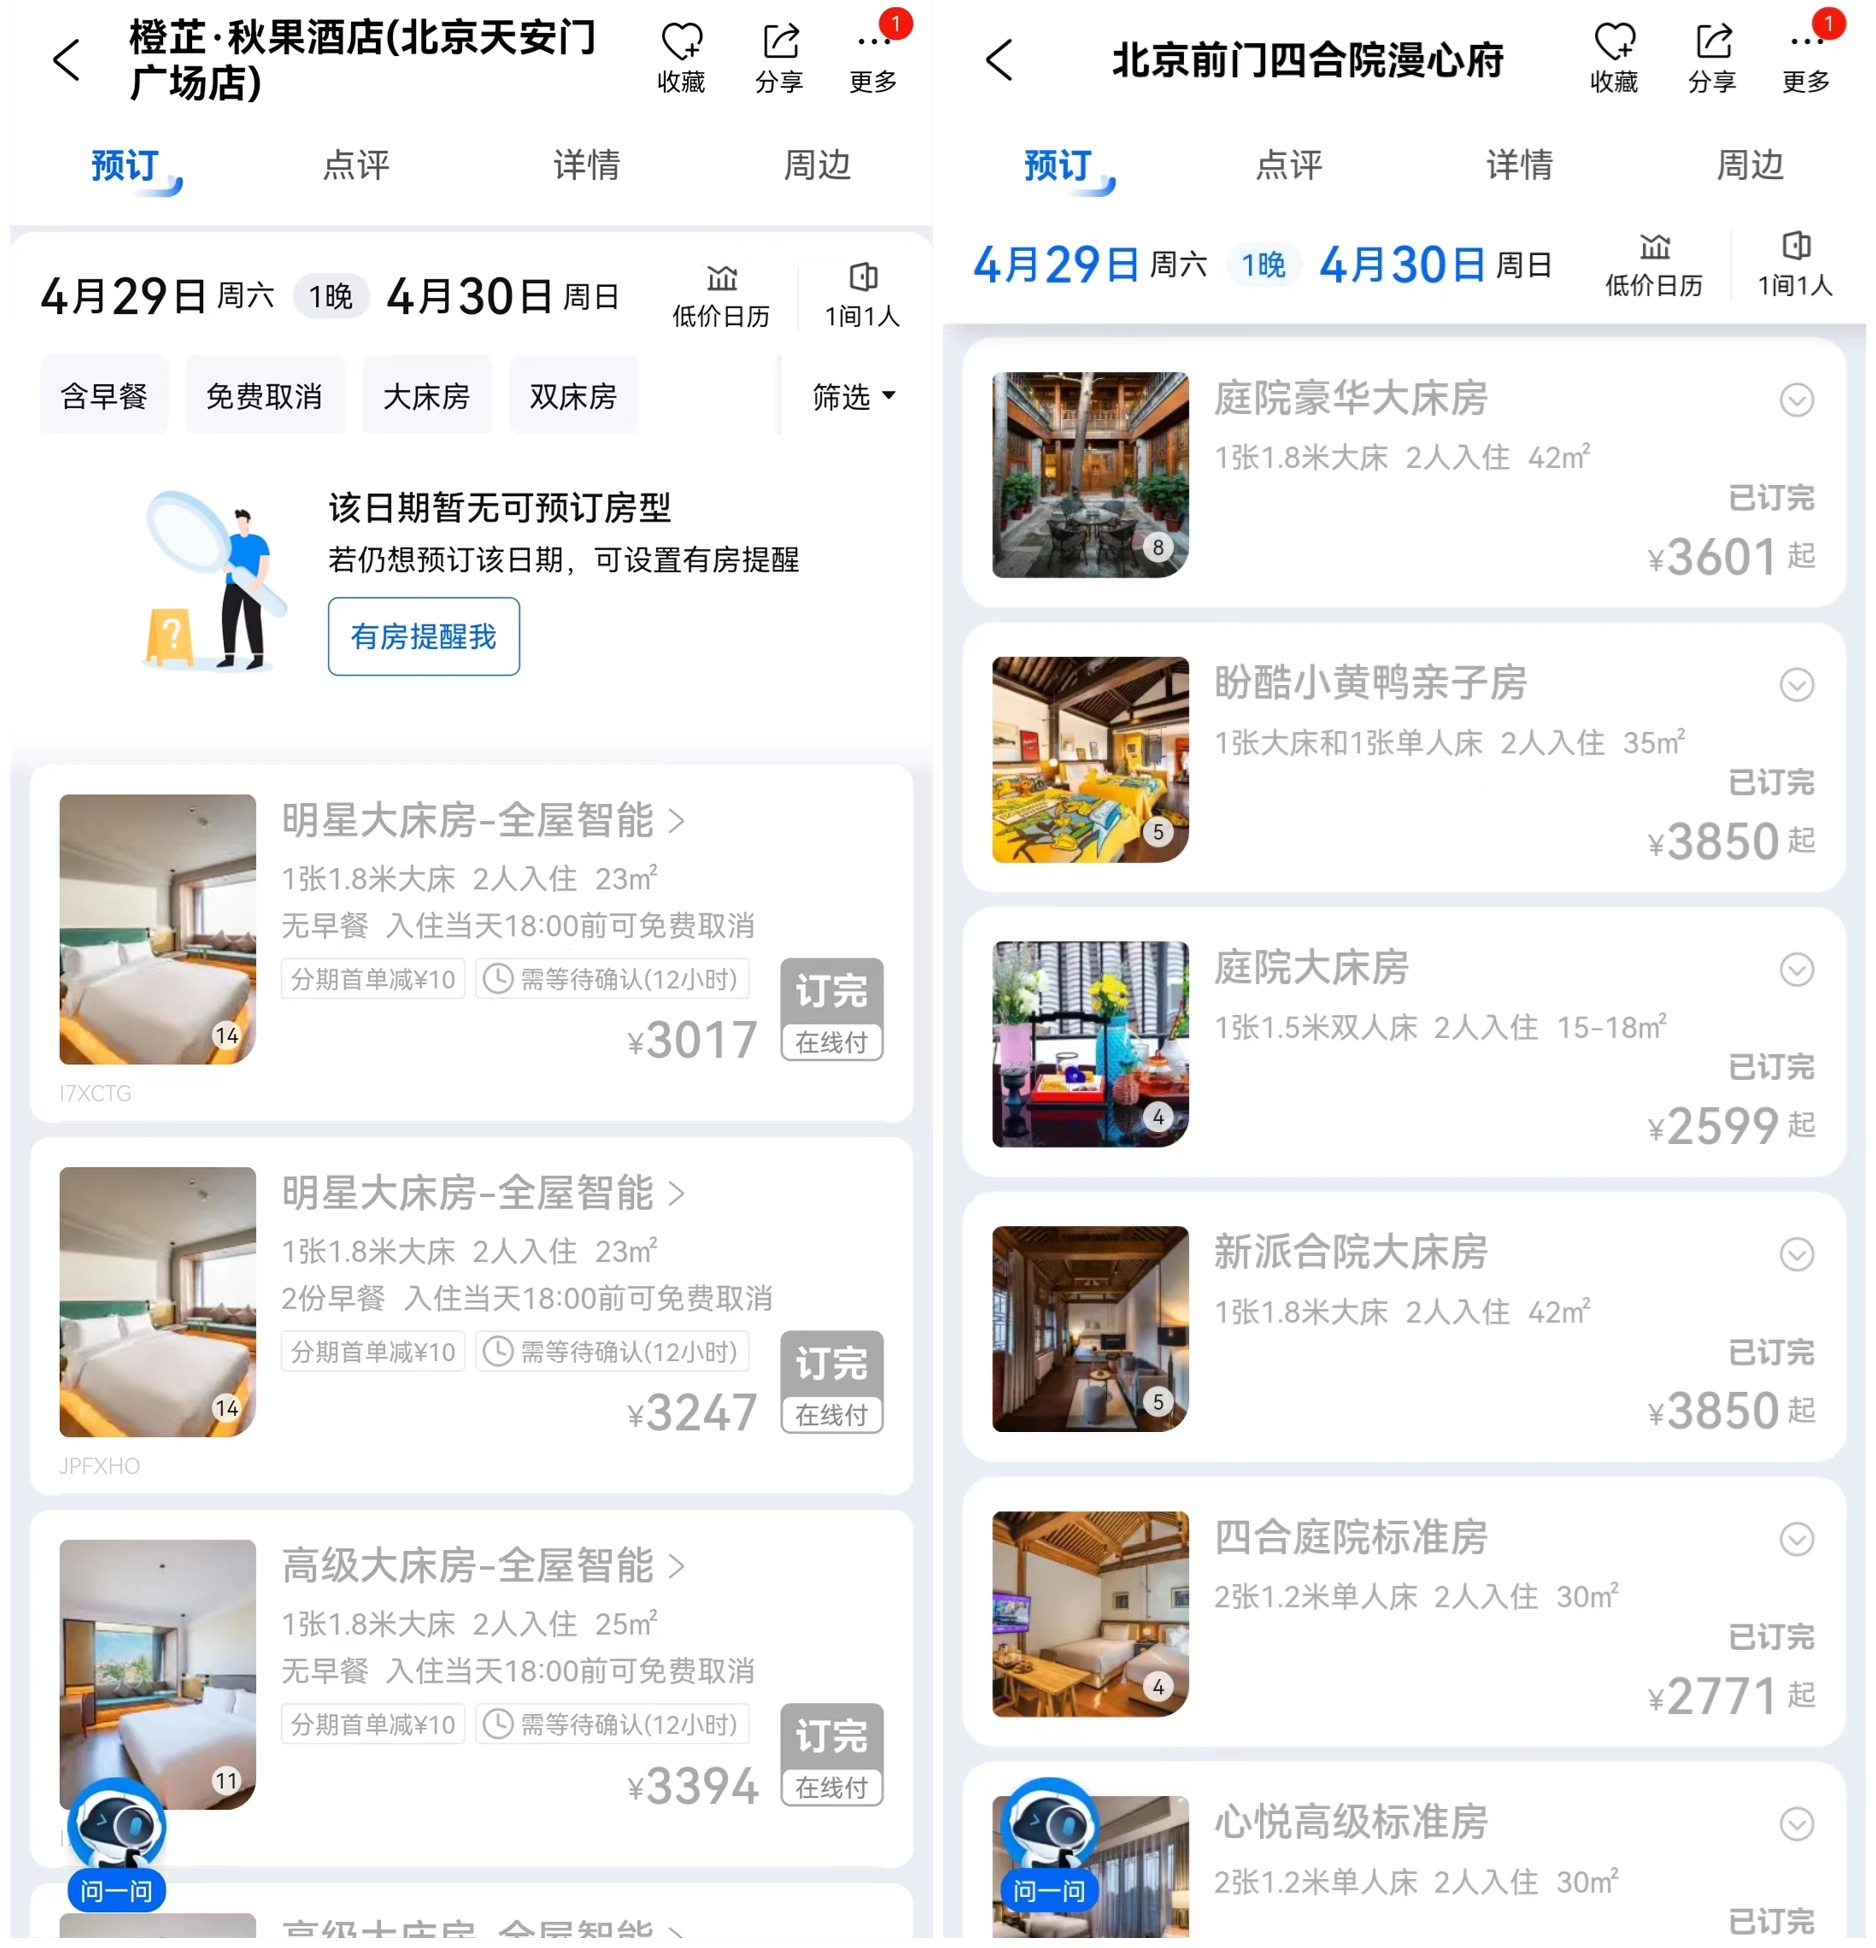 北京天安门附近有酒店已显示满房，或多个房型订满。截图来源：携程旅行App